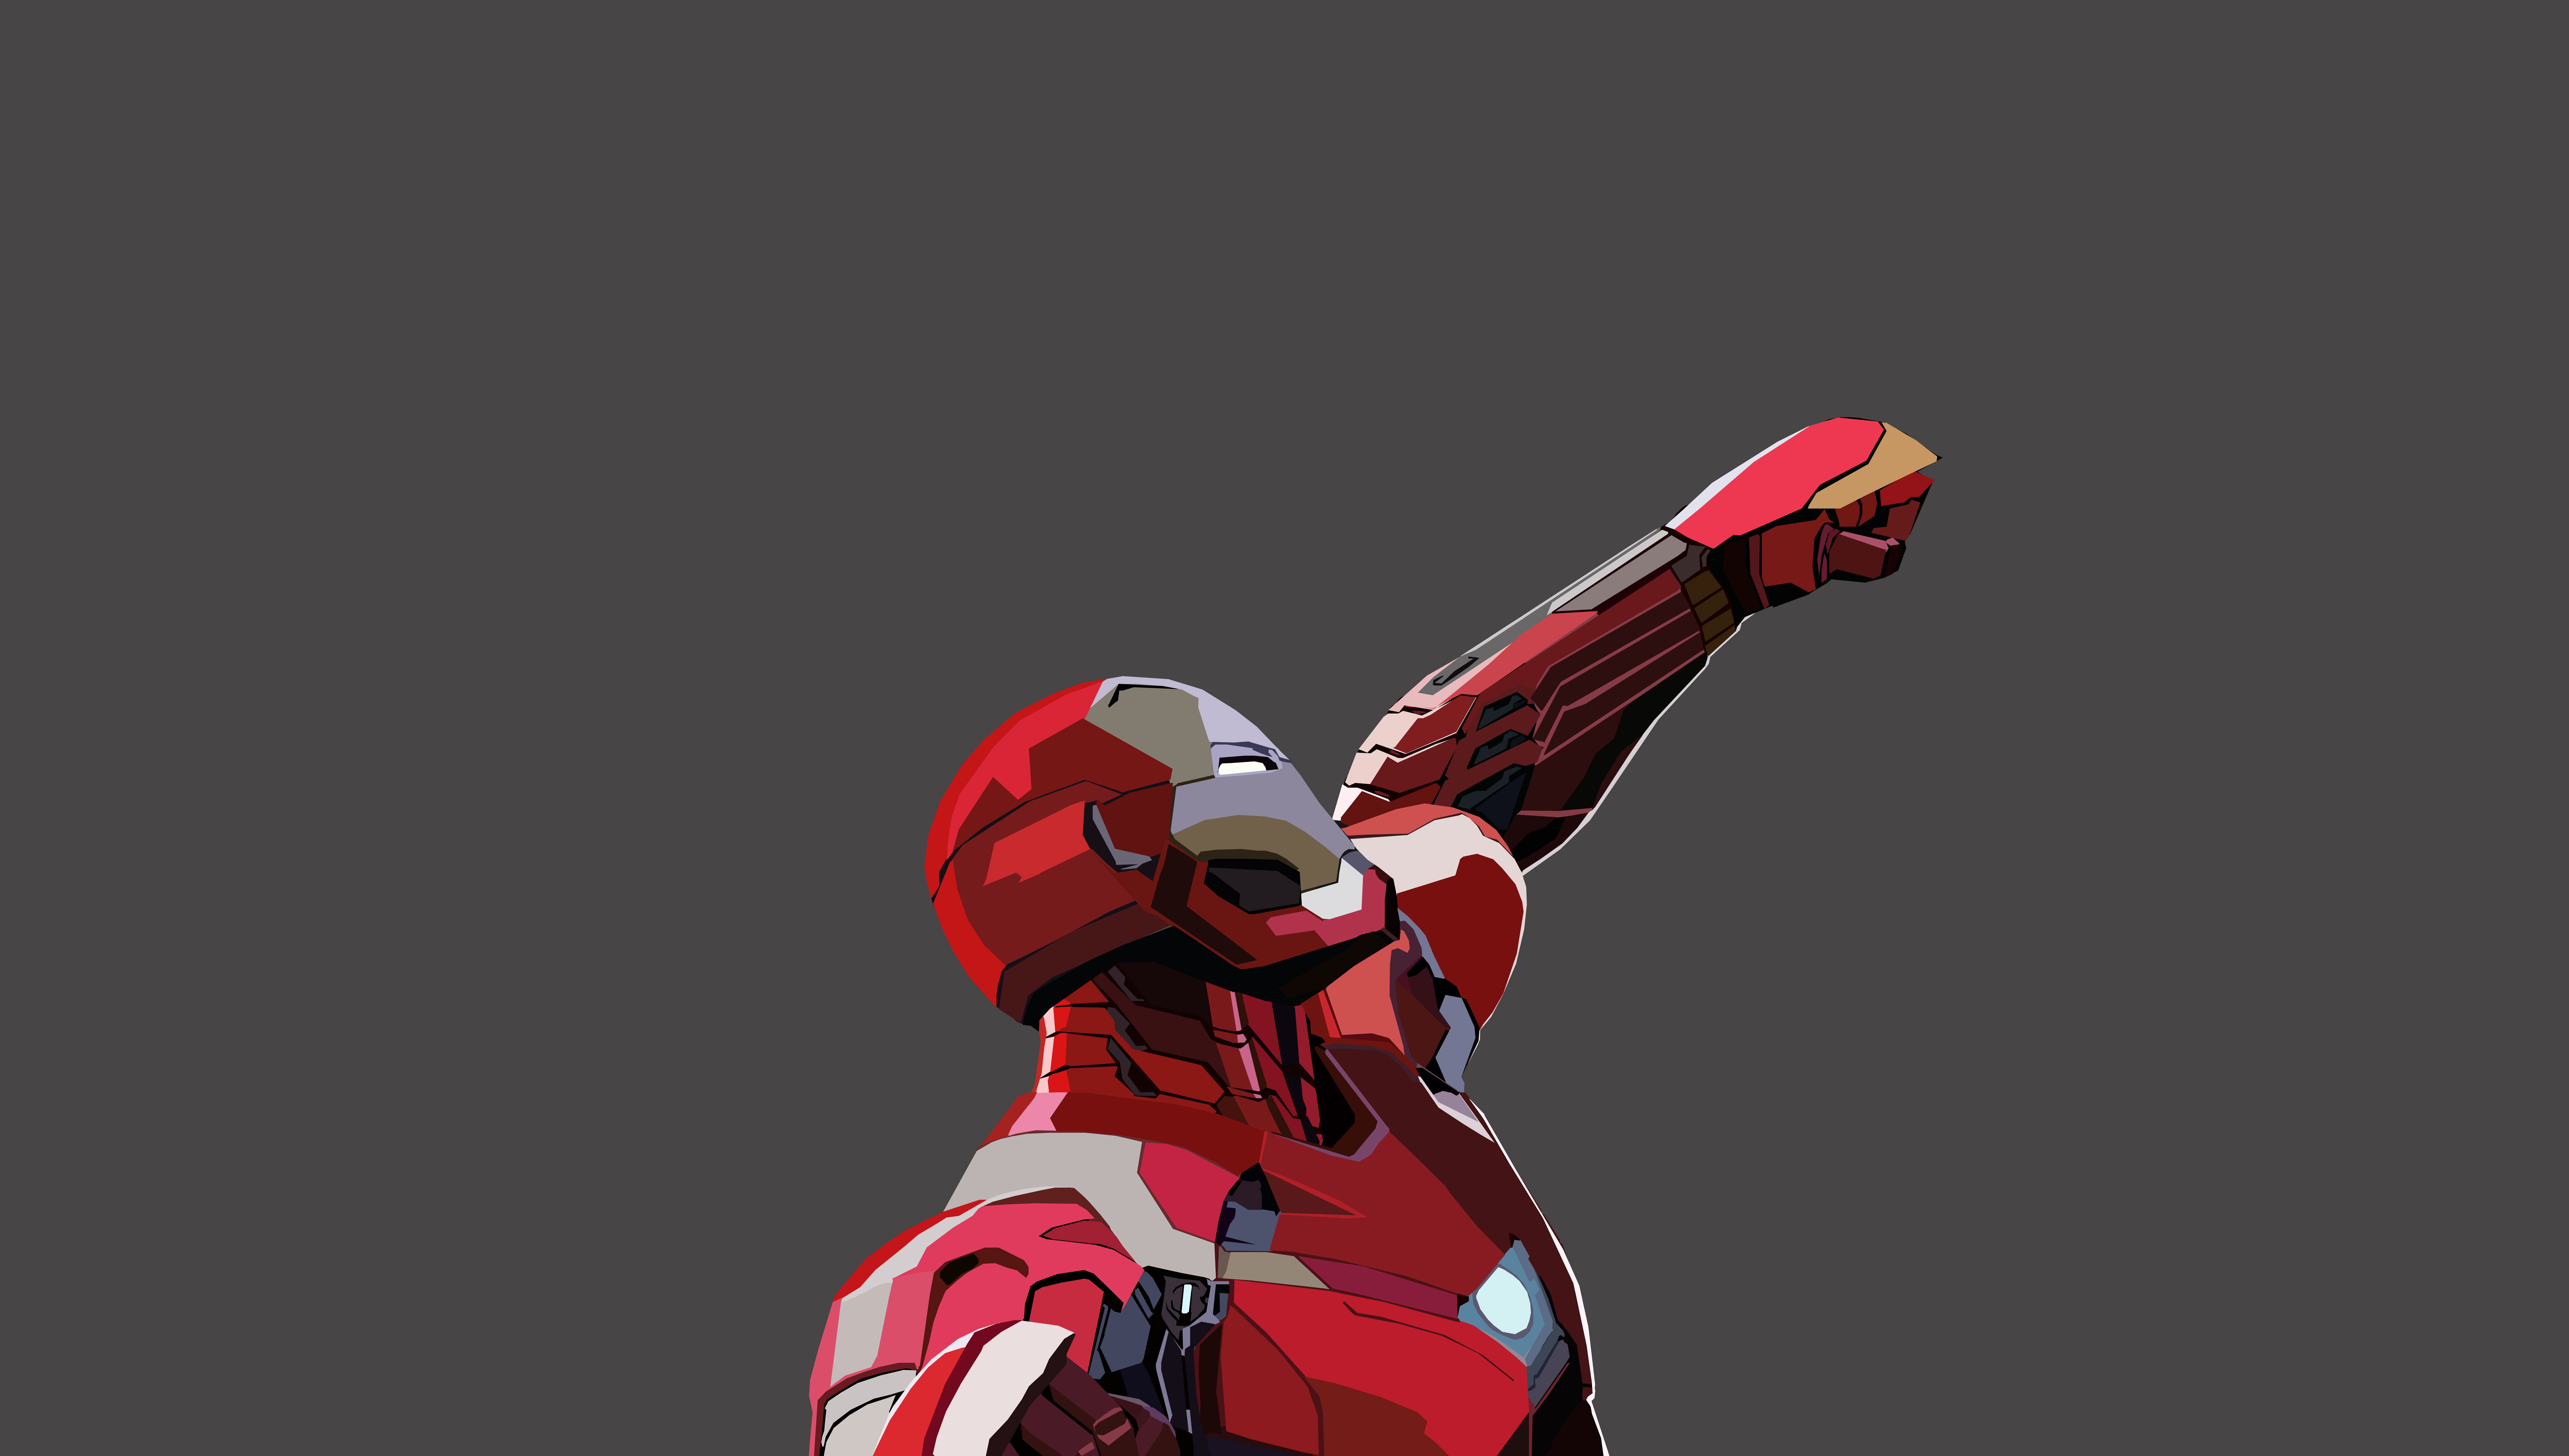 Download mobile wallpaper Iron Man, Avengers, Movie, The Avengers, Avengers Endgame for free.